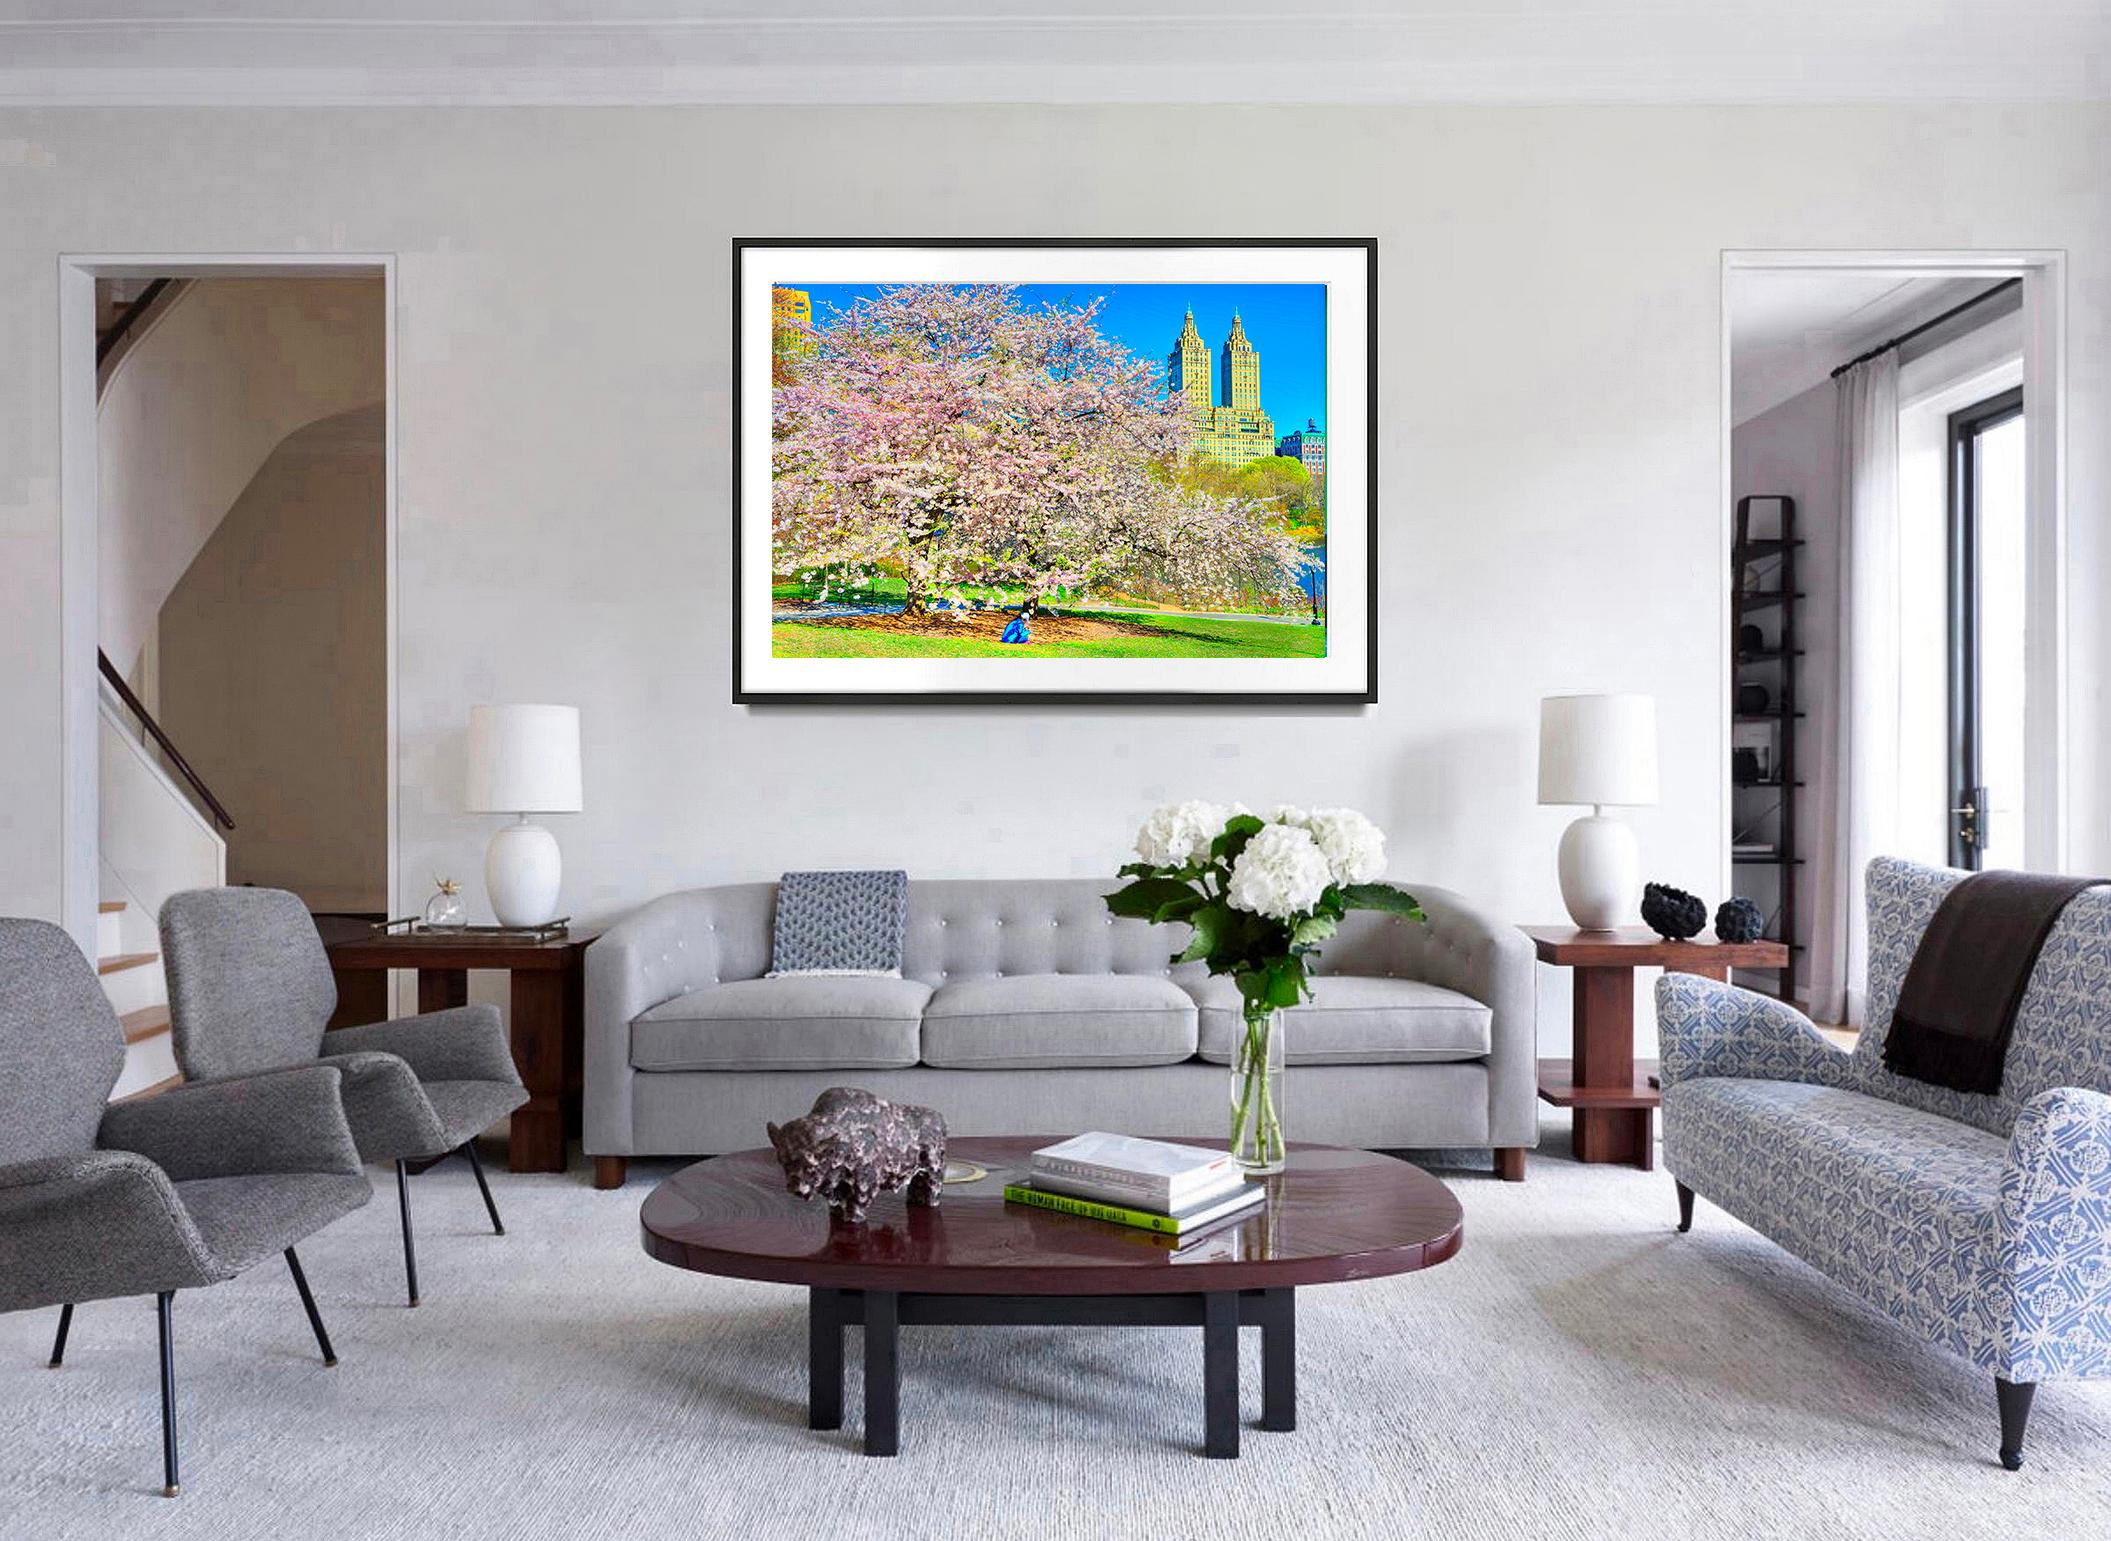 Der majestätische  Die San Remo Apartments im Renaissance-Stil bilden die Kulisse für die prächtige Kirschblütenpracht im Central Park. Unter dem bunt blühenden Baum ist eine sitzende weibliche Figur in Blau zu sehen. Ihr blaues Hemd spiegelt den